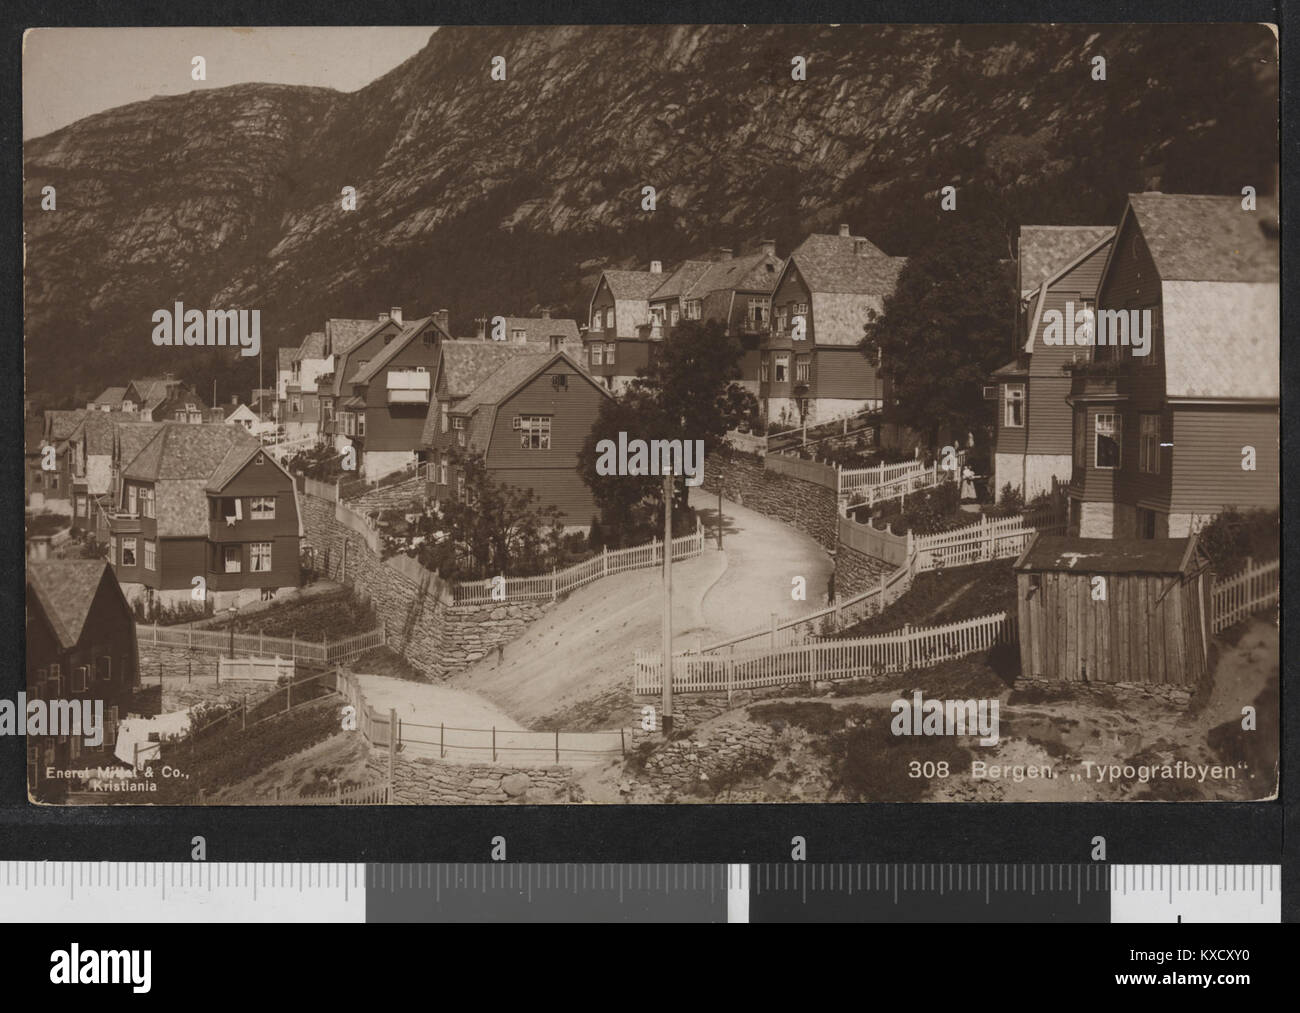 308 Bergen. 'Typografbyen' - no-nb digifoto 20160114 00103 bldsa PK16252 Stock Photo